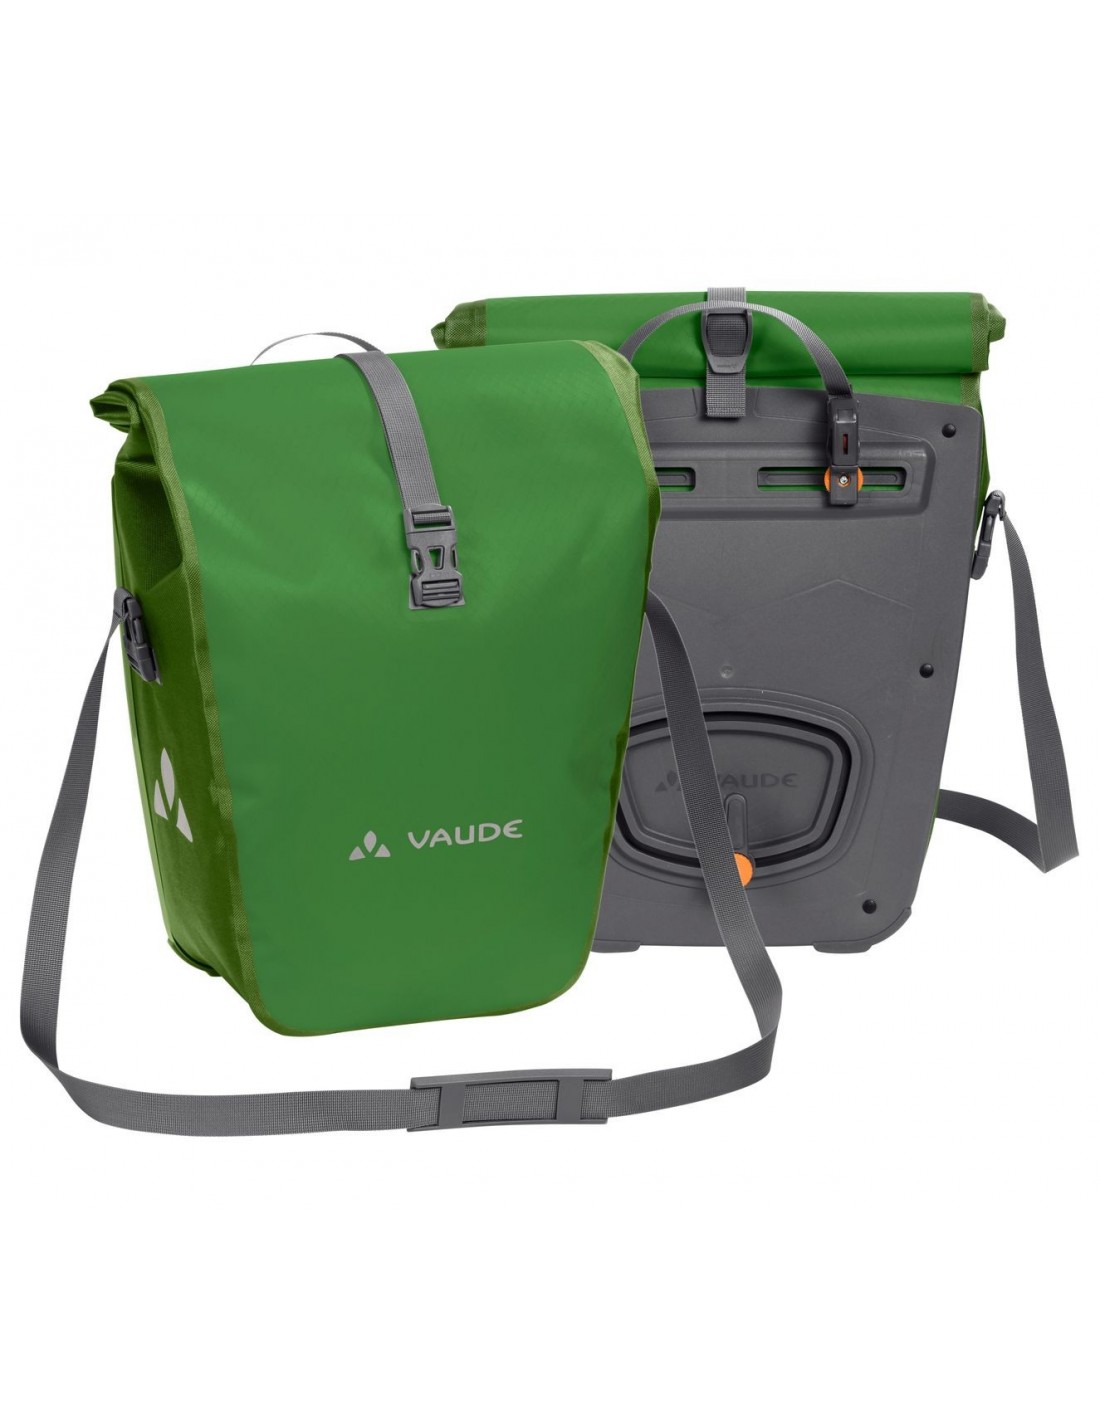 Vaude Aqua Back - Parrot Green Taschenvariante - Gepäckträgertaschen, günstig online kaufen